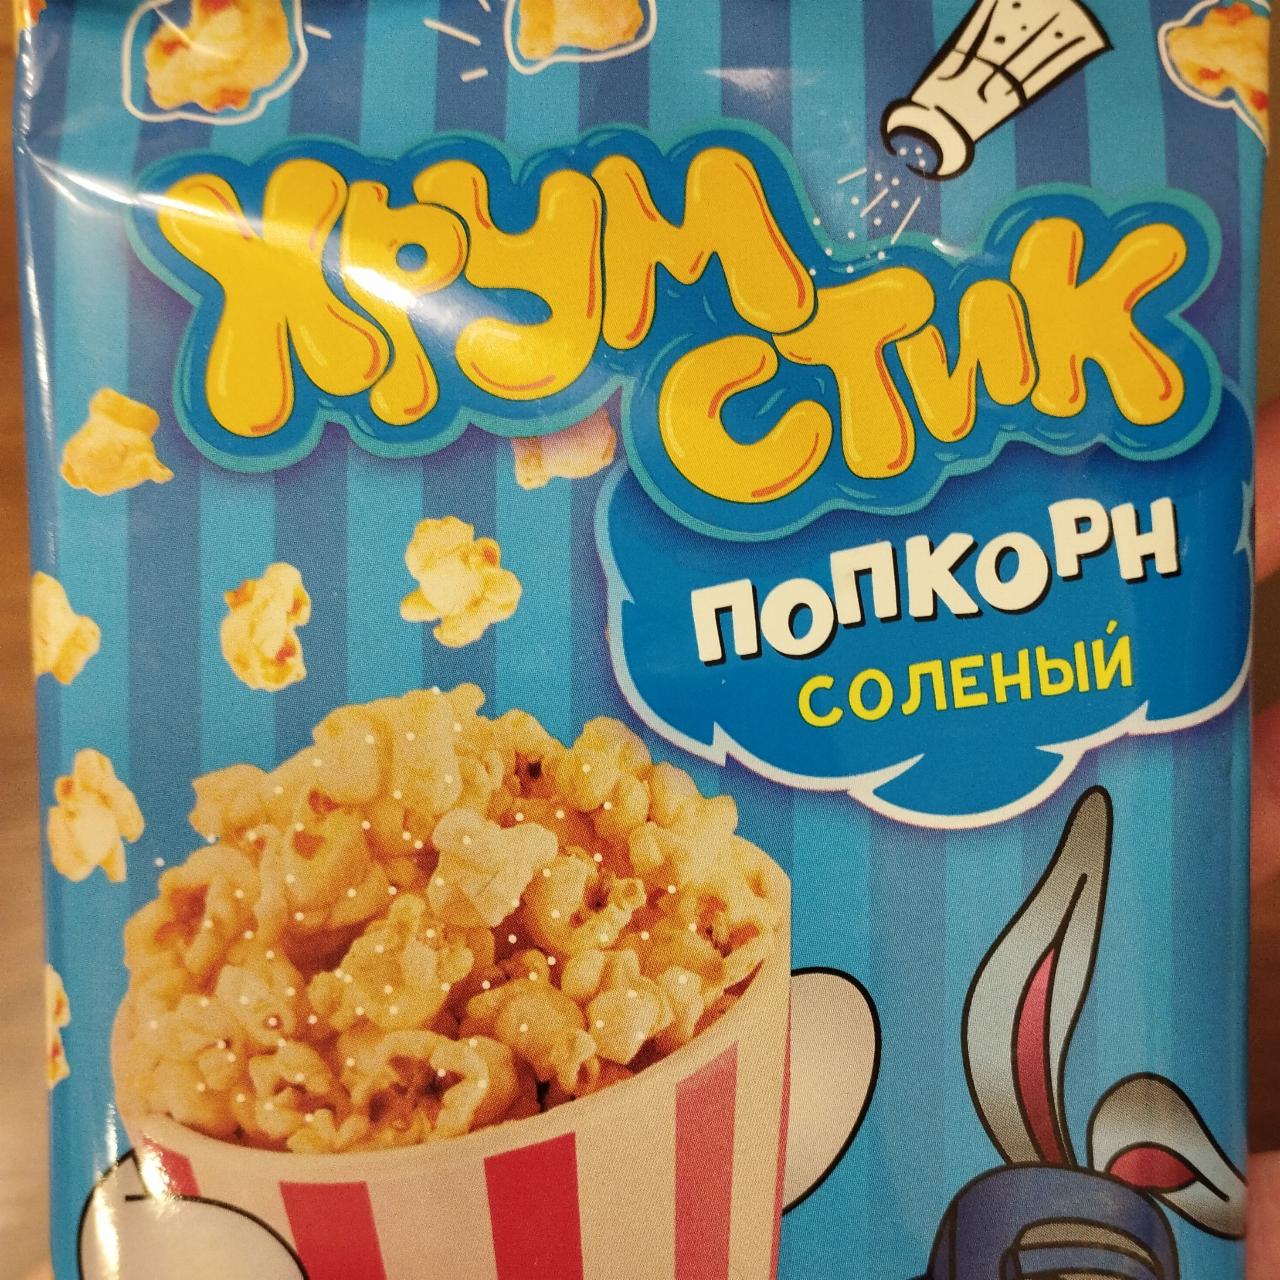 Фото - попкорн солёный Хрумстик